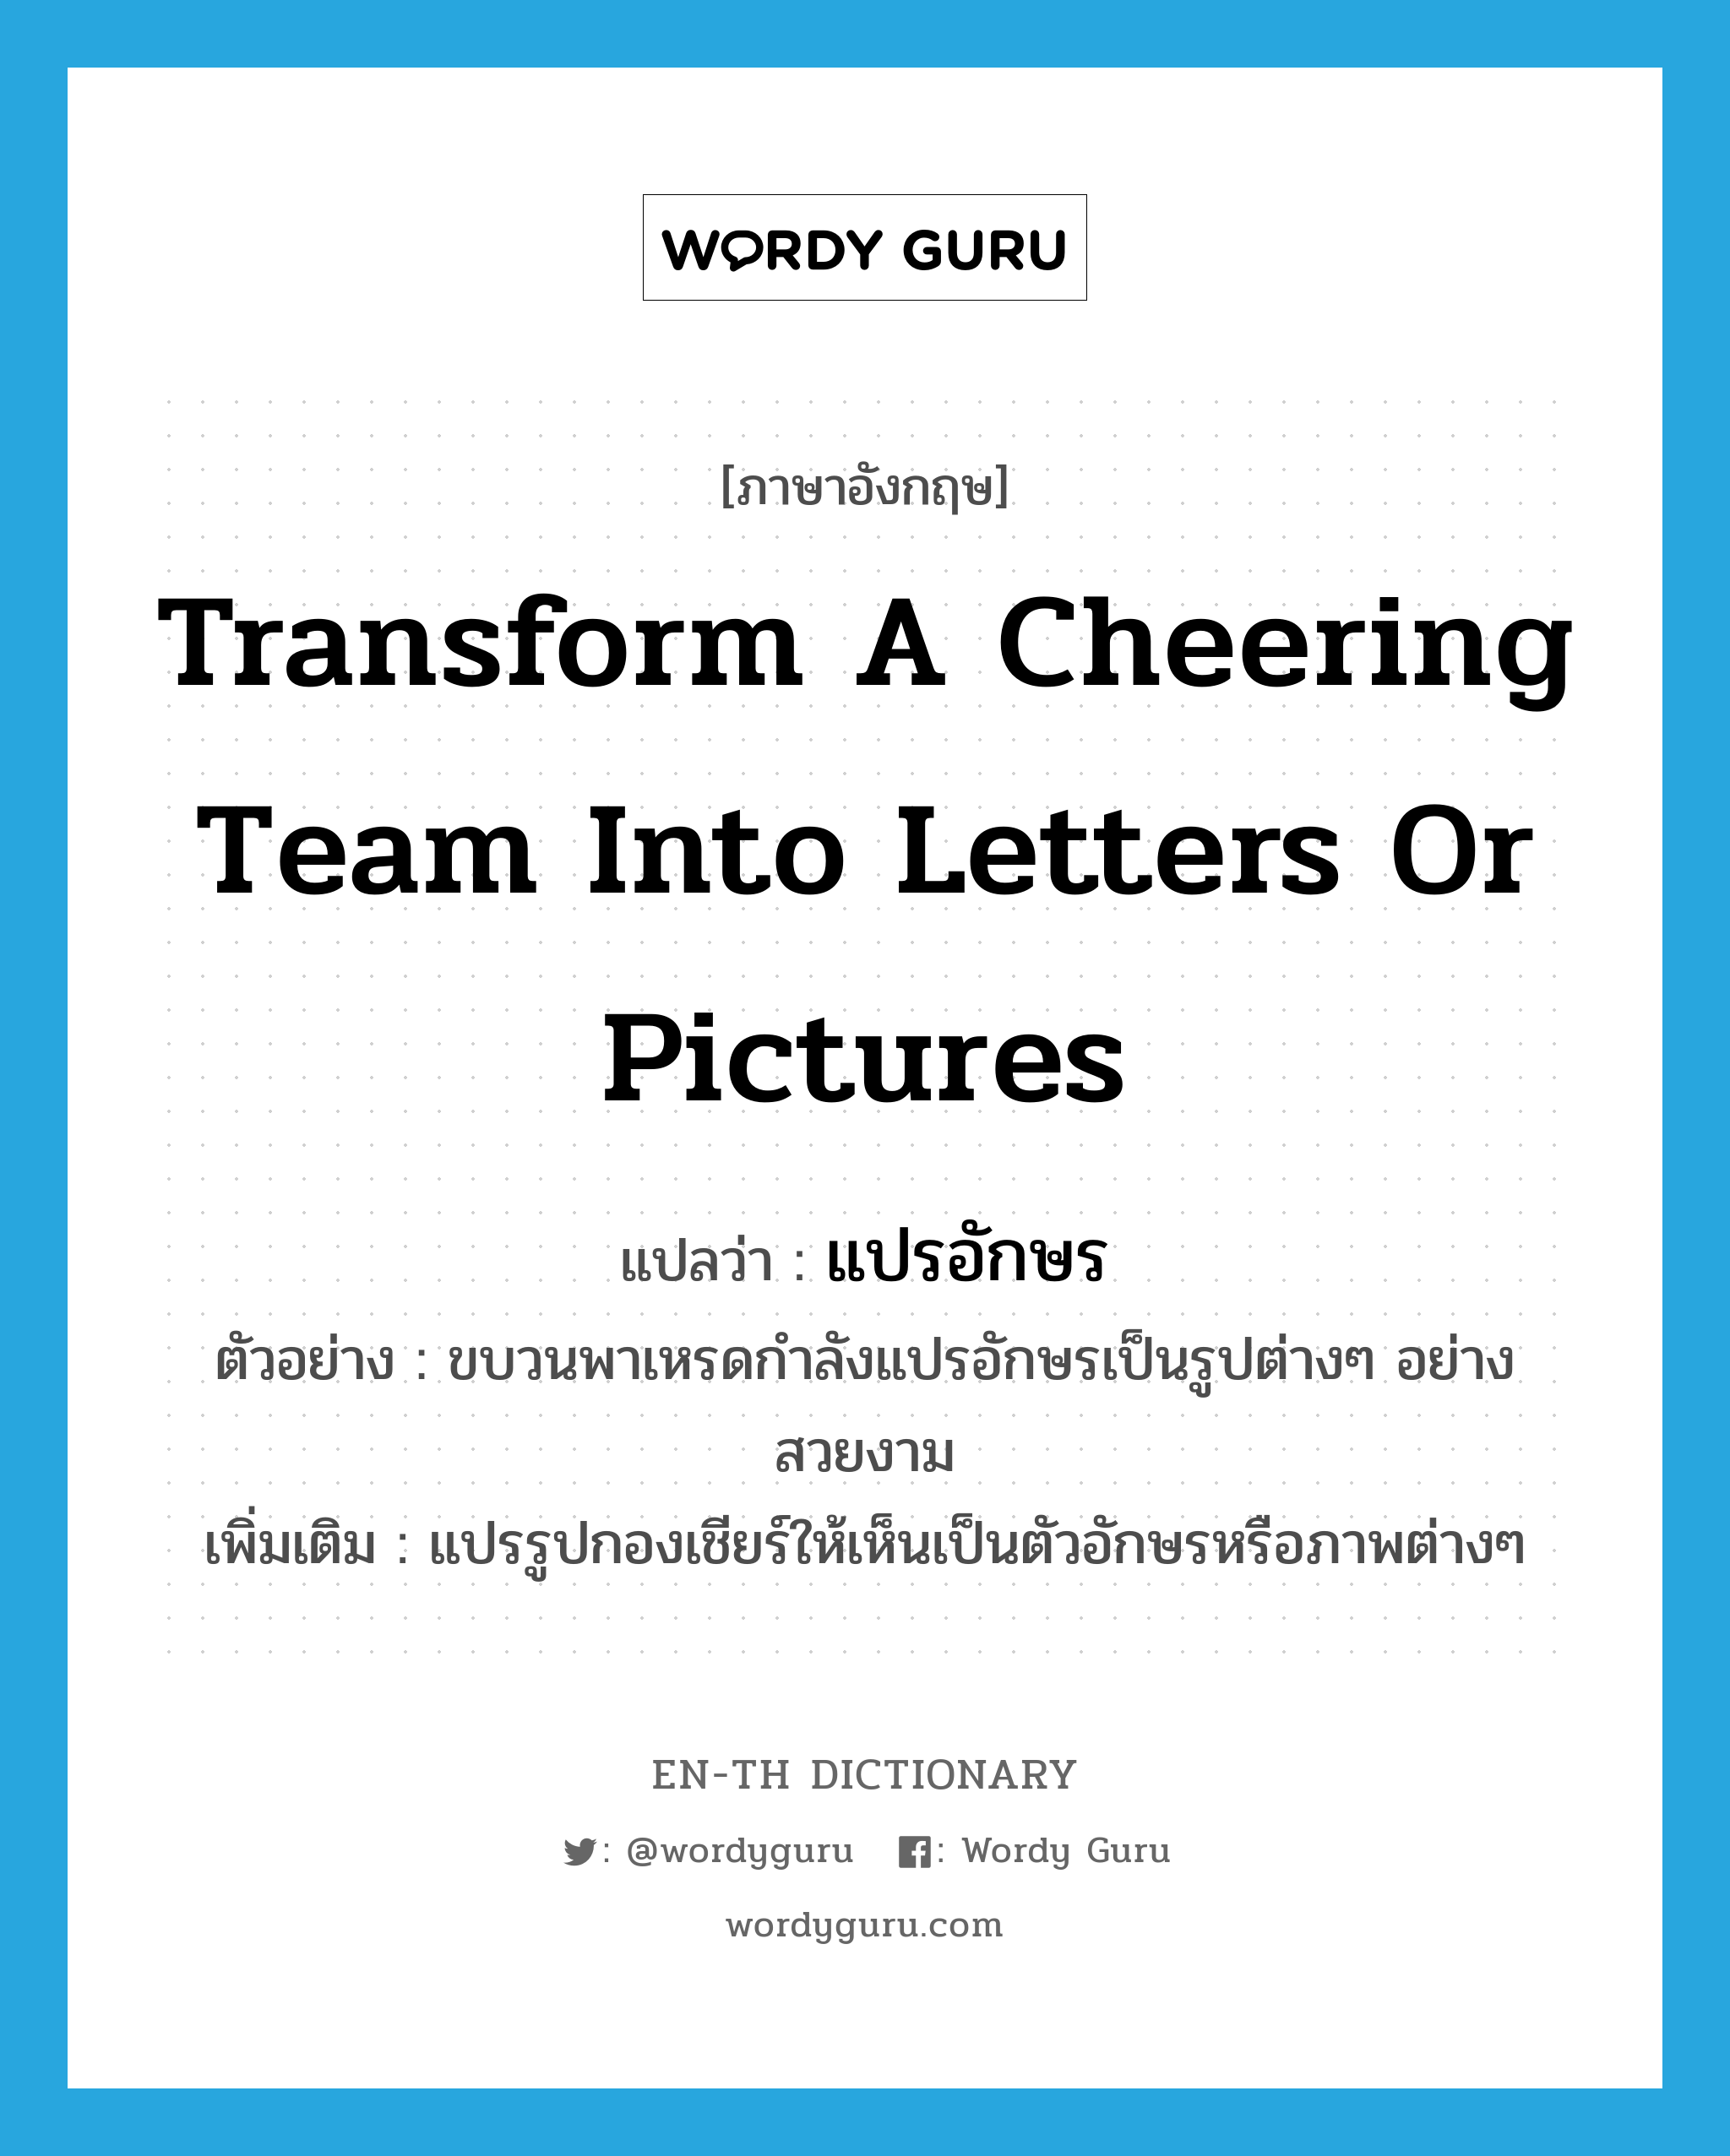 แปรอักษร ภาษาอังกฤษ?, คำศัพท์ภาษาอังกฤษ แปรอักษร แปลว่า transform a cheering team into letters or pictures ประเภท V ตัวอย่าง ขบวนพาเหรดกำลังแปรอักษรเป็นรูปต่างๆ อย่างสวยงาม เพิ่มเติม แปรรูปกองเชียร์ให้เห็นเป็นตัวอักษรหรือภาพต่างๆ หมวด V